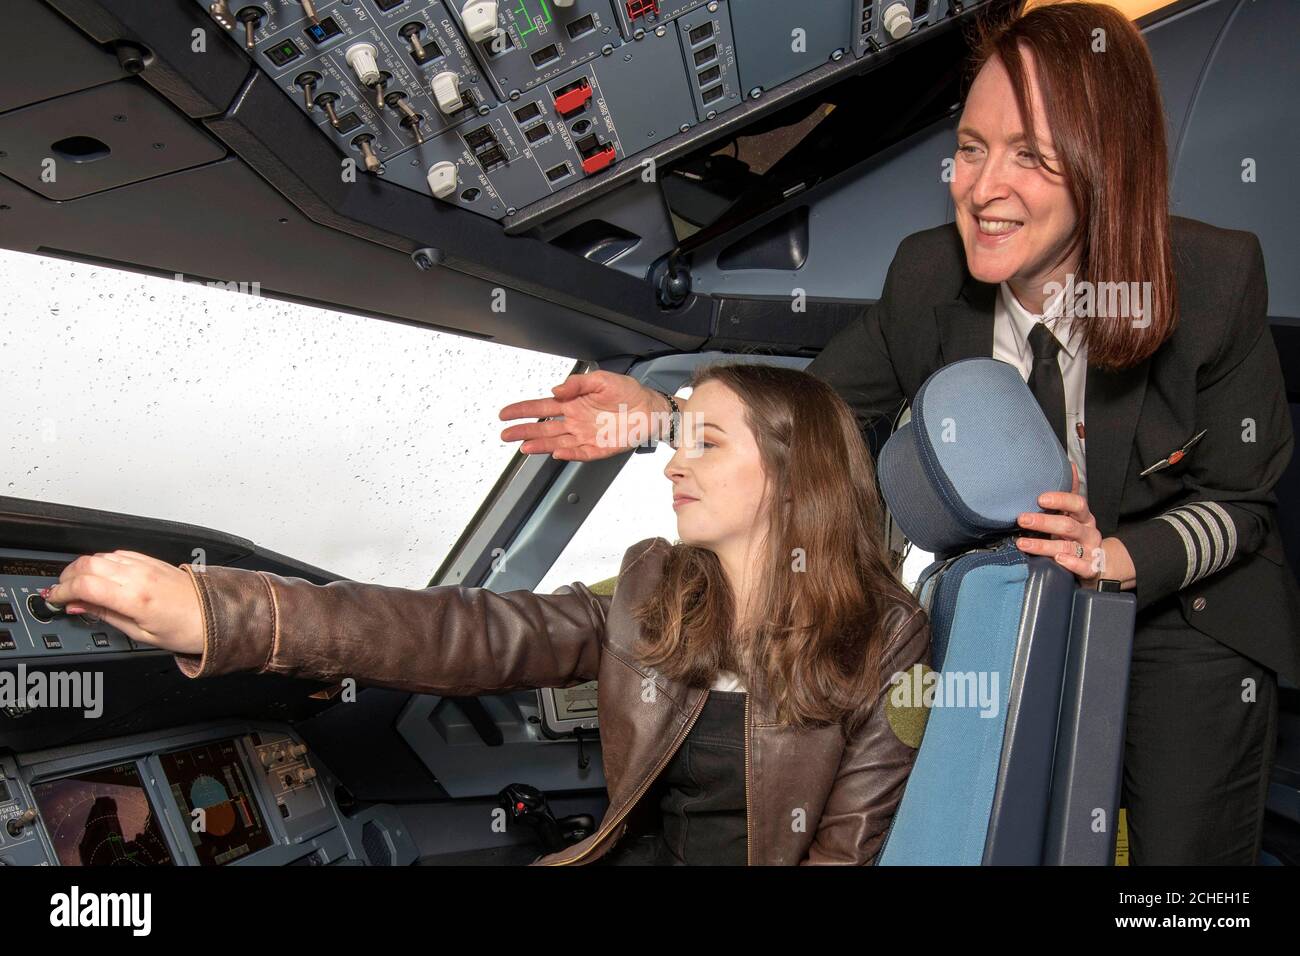 Ellie Carter, el piloto con licencia más joven de Gran Bretaña, de 16 años, se reúne con el capitán de entrenamiento de línea Zoe Ebrey, mientras comienza su tutoría de aviación con easyJet, para ayudar a cumplir sus aspiraciones profesionales, en el aeropuerto de Bristol. Foto de stock